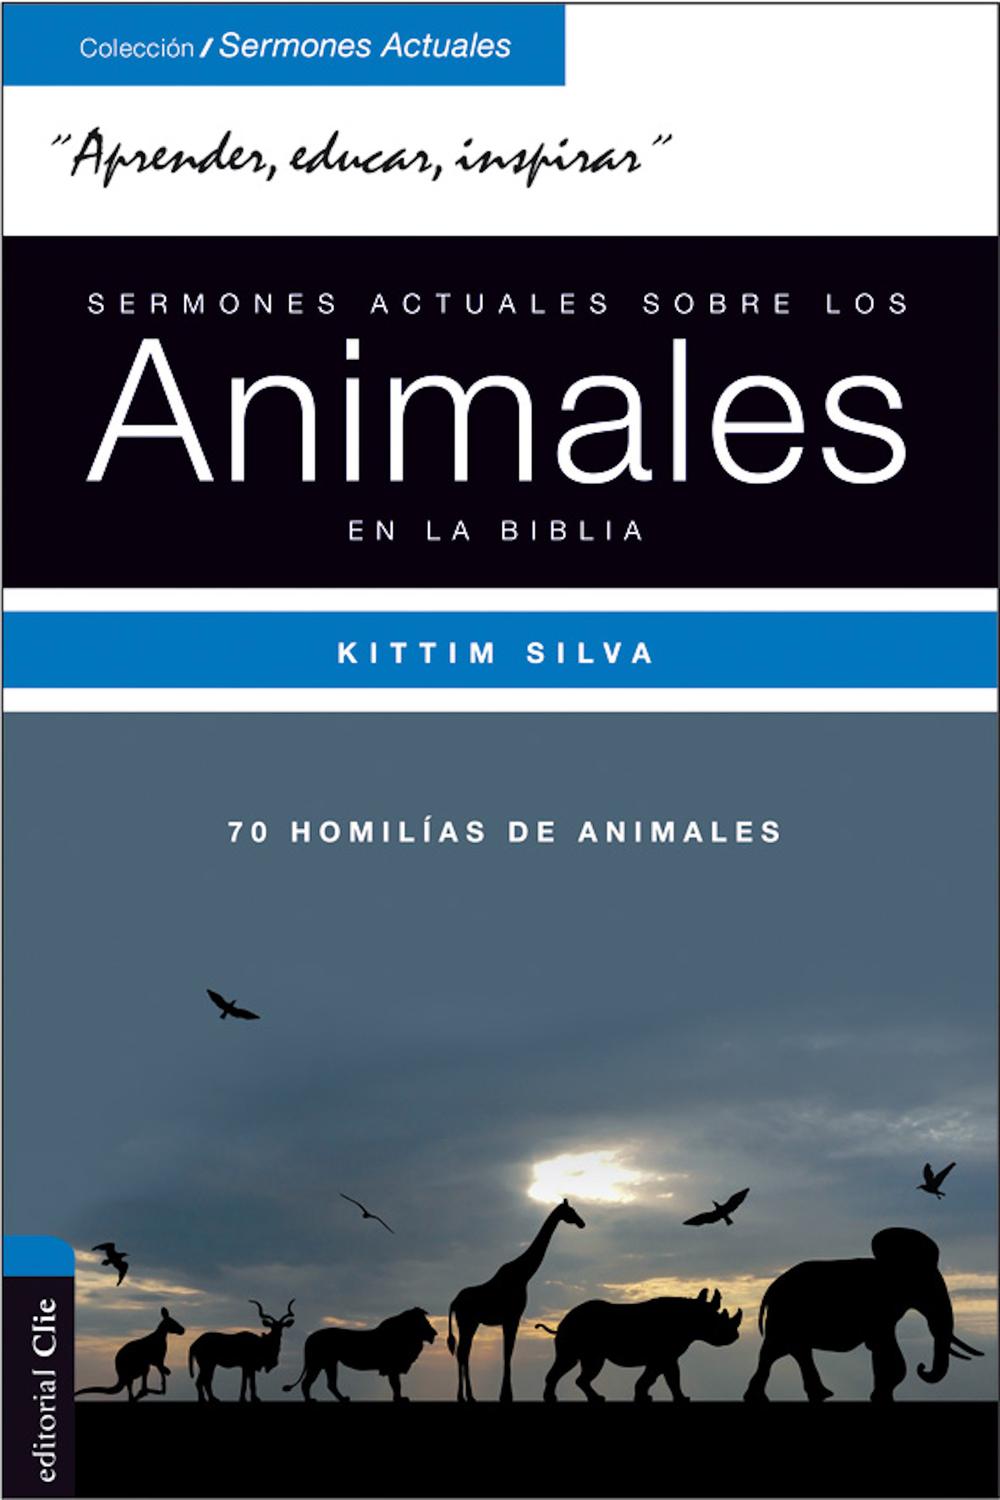 Sermones actuales sobre los animales en la Biblia - Kittim Silva